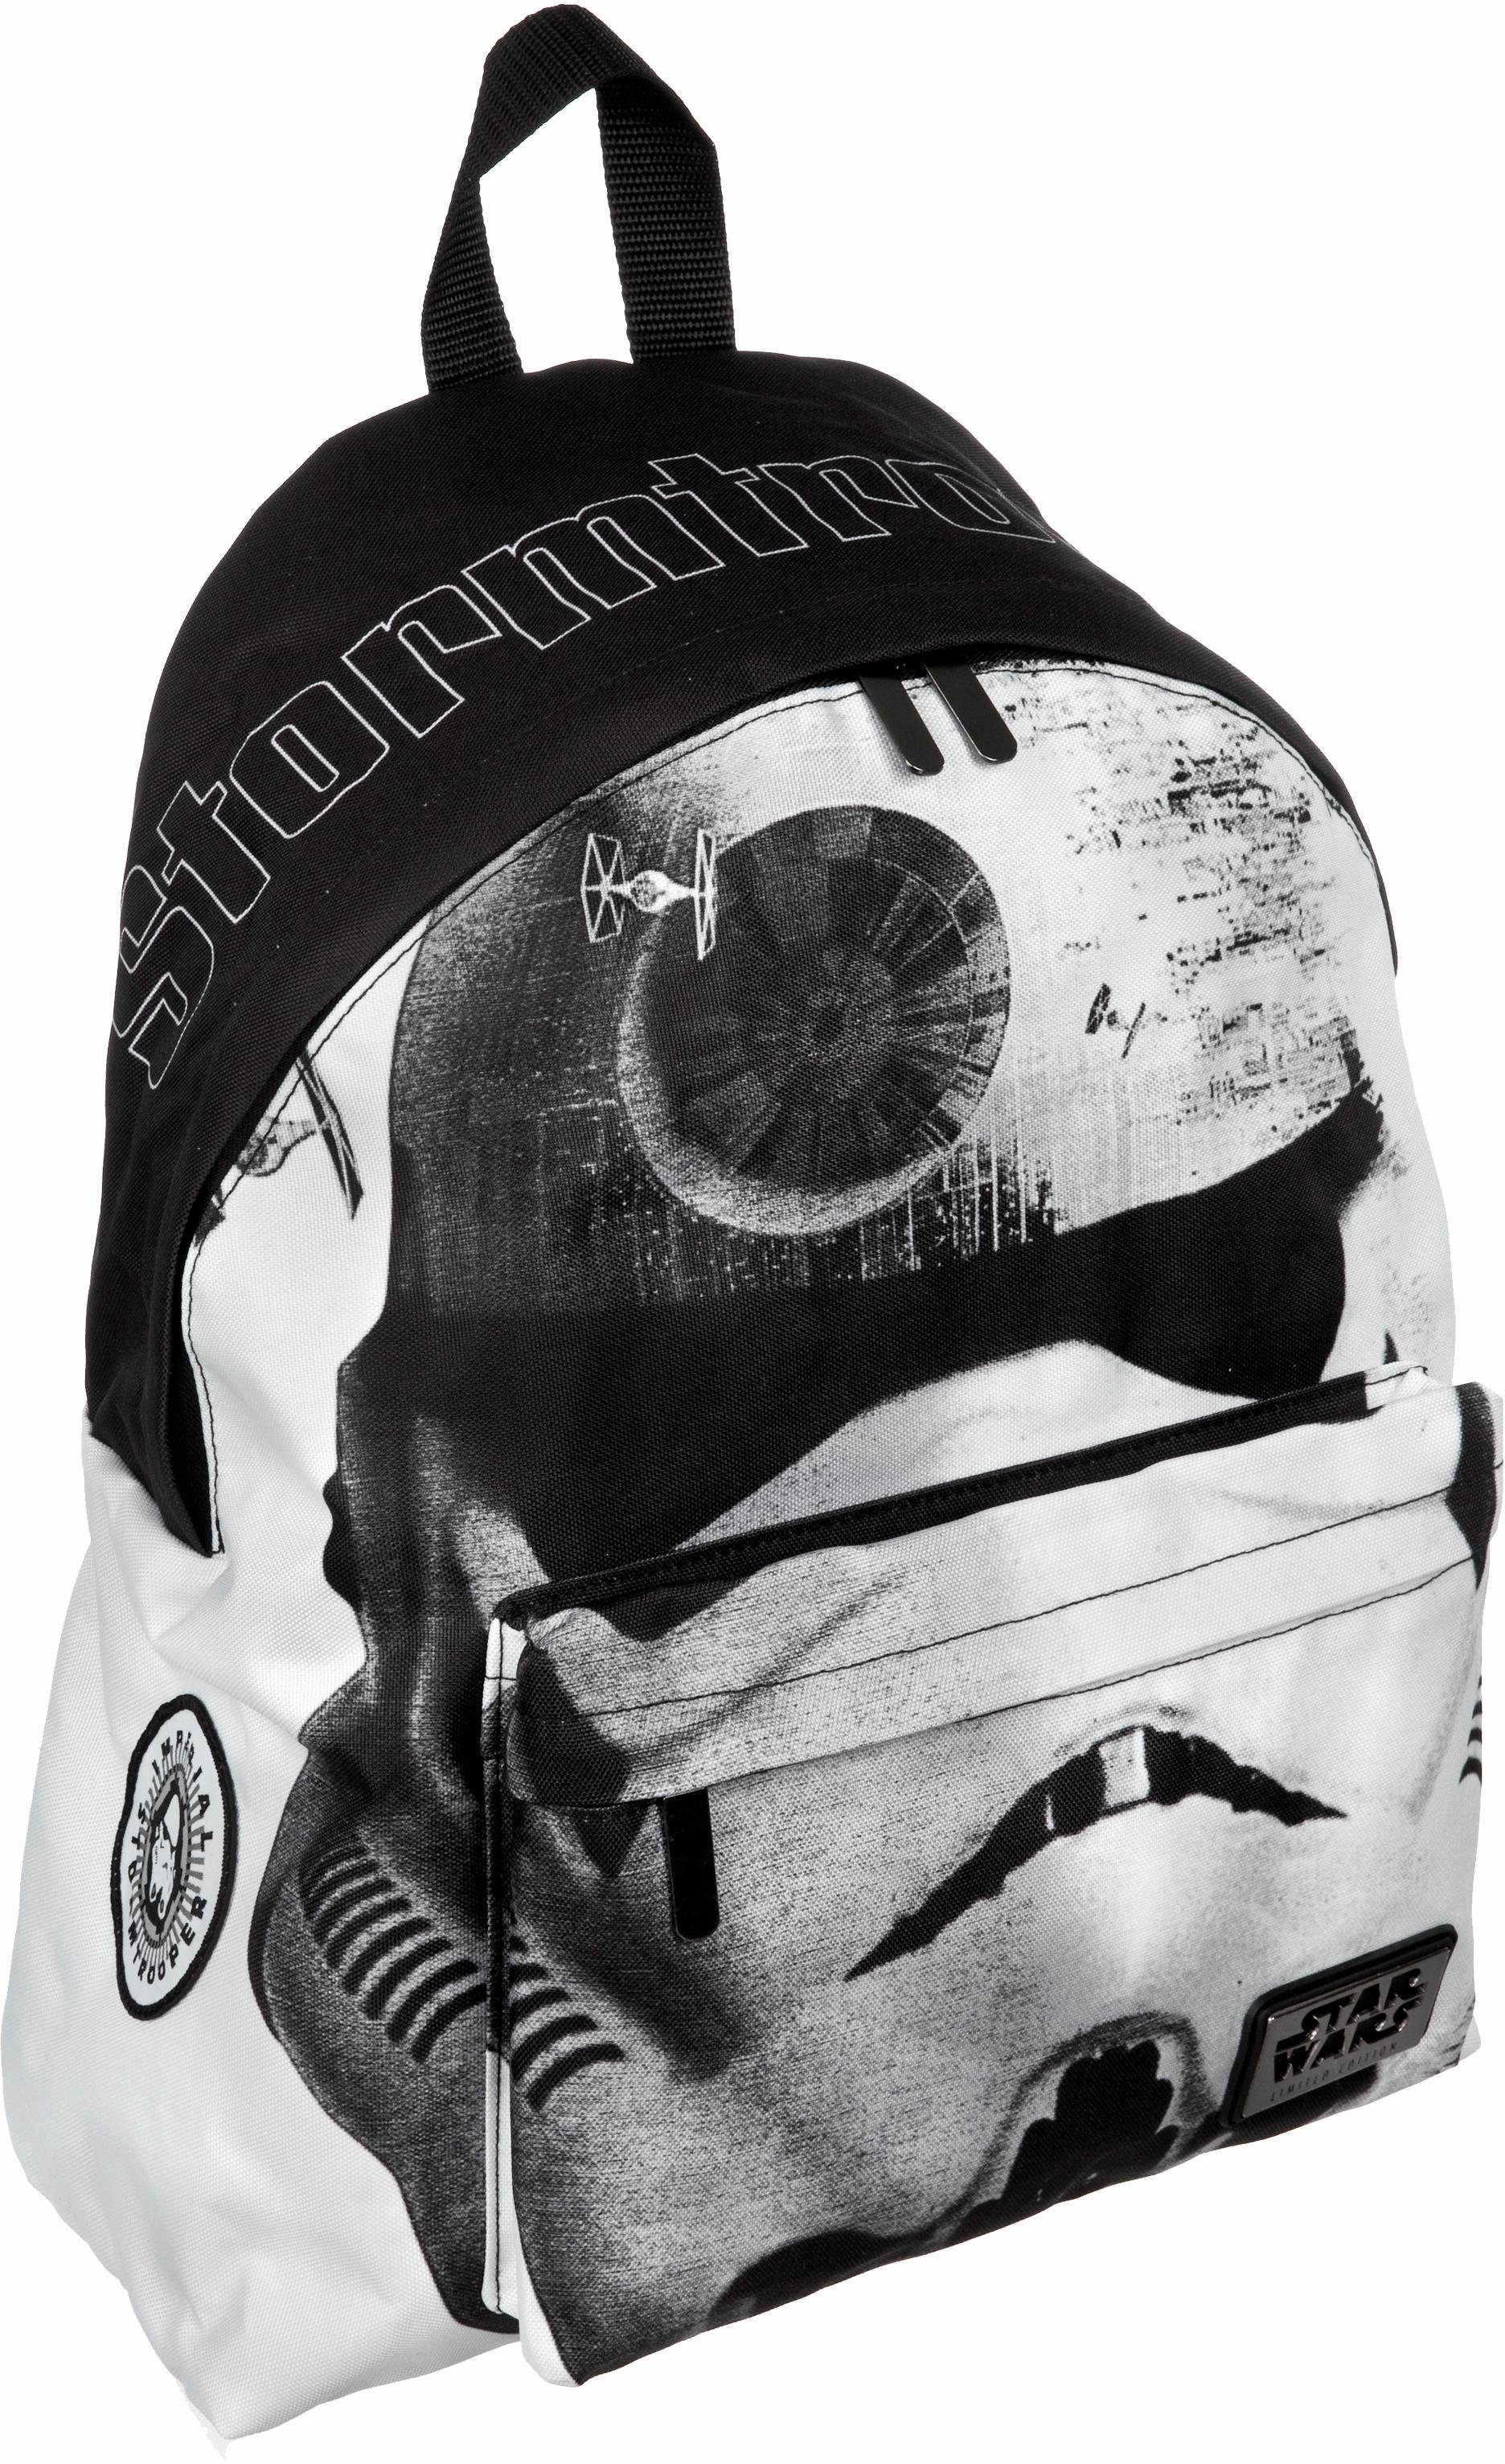 Undercover NU 15% KORTING: Undercover rugzak, 'Rugzak Daypack Stormtrooper'